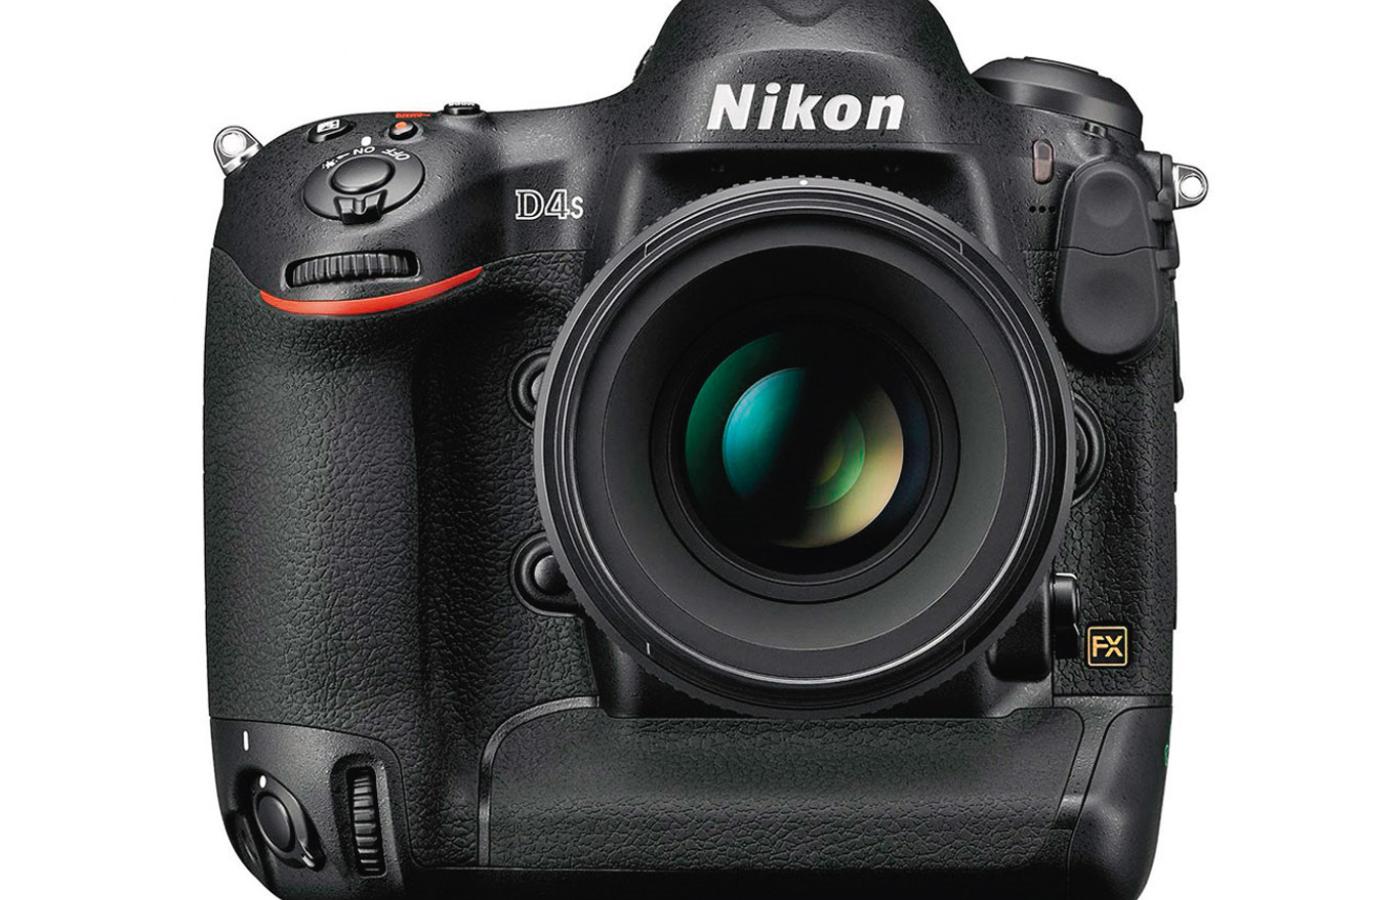 Lustrzanka Nikona D4S ma wszystko, czego się można spodziewać po profesjonalnym aparacie fotograficznym.